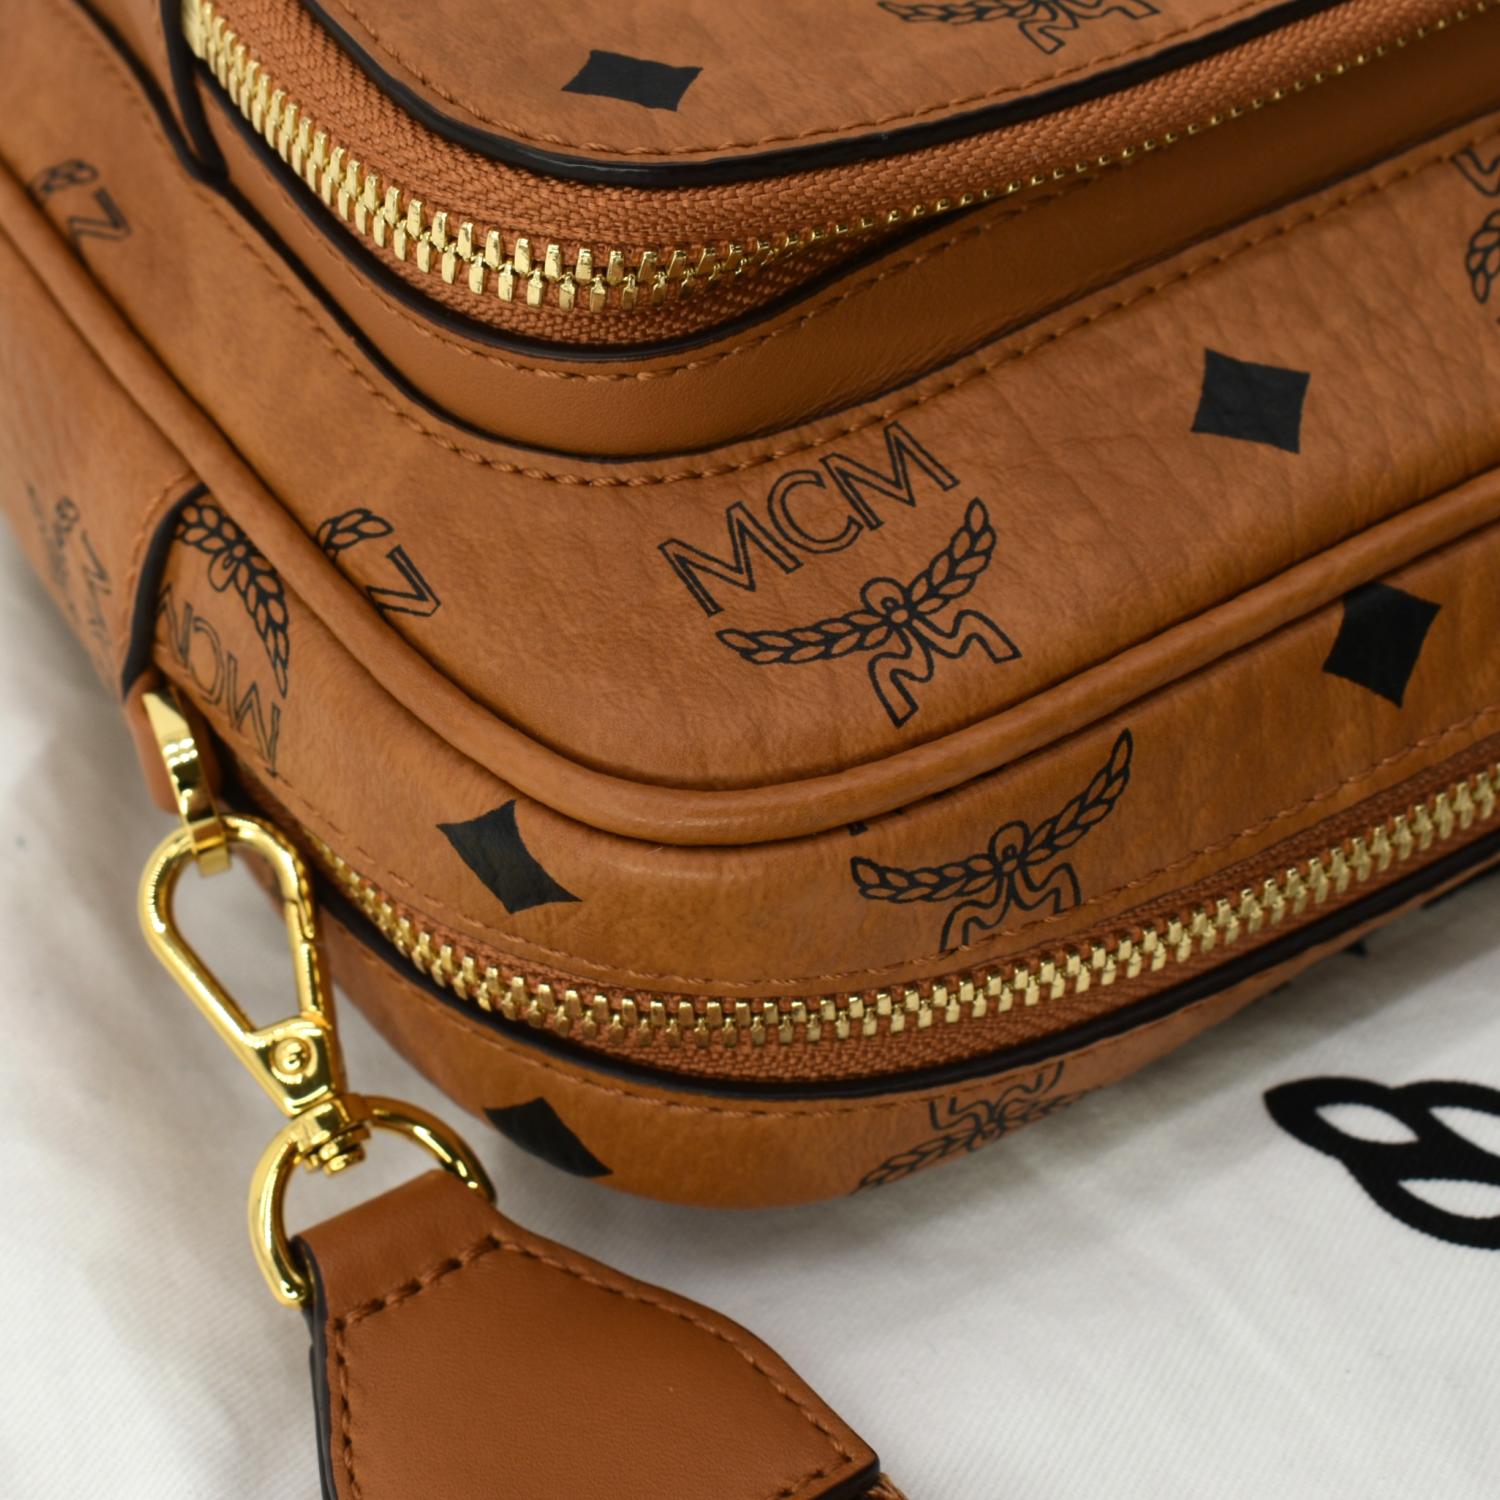 Mcm Small Klassik Visetos Sling Style Backpack In Cognac